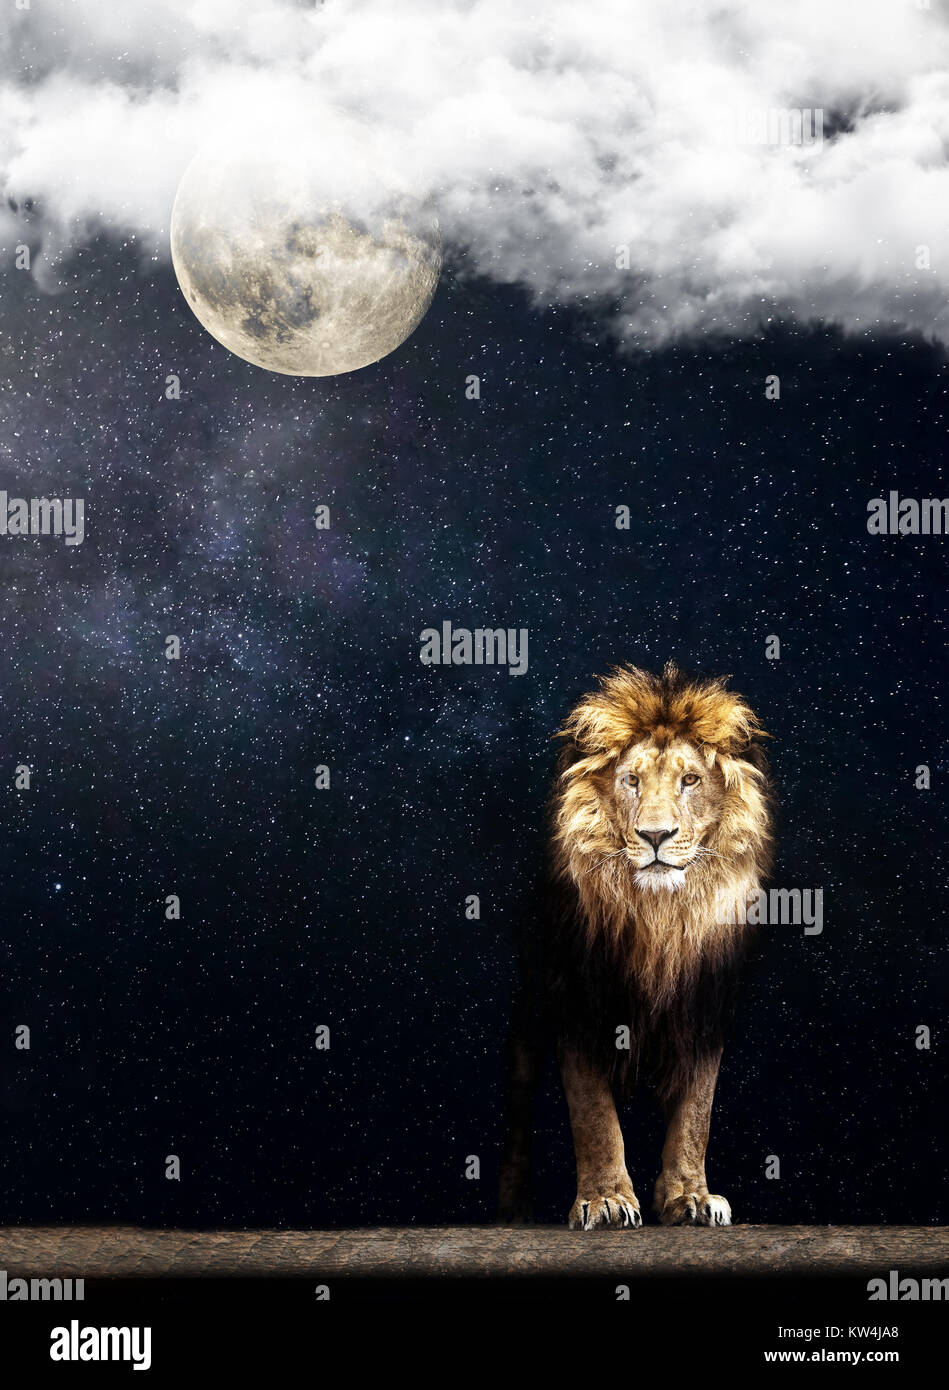 Porträt einer wunderschönen Löwe, Löwen in den nächtlichen Sternenhimmel  und Mond Stockfotografie - Alamy